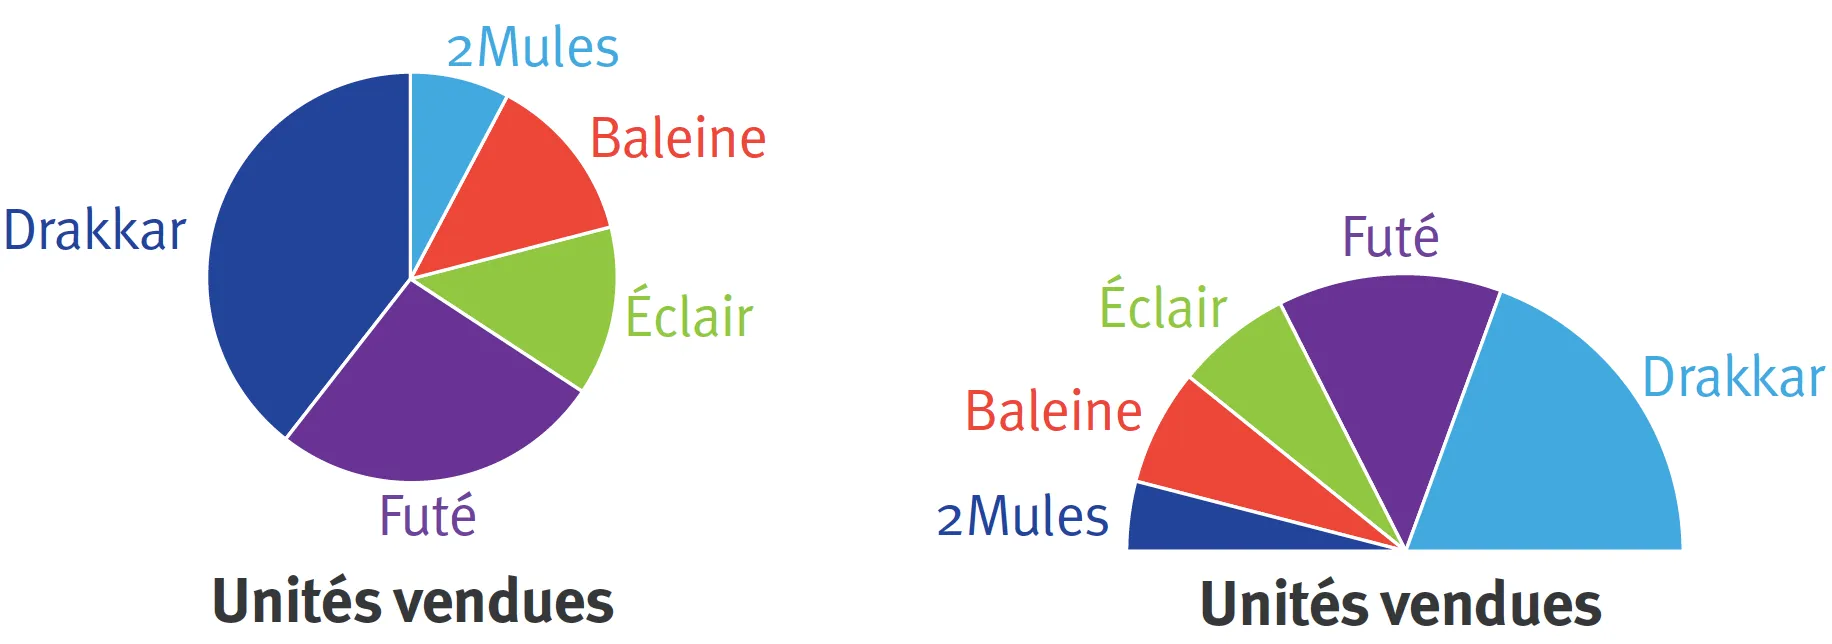 Diagramme circulaire et demi-circulaire pour comparer des proportions d'unités vendues.